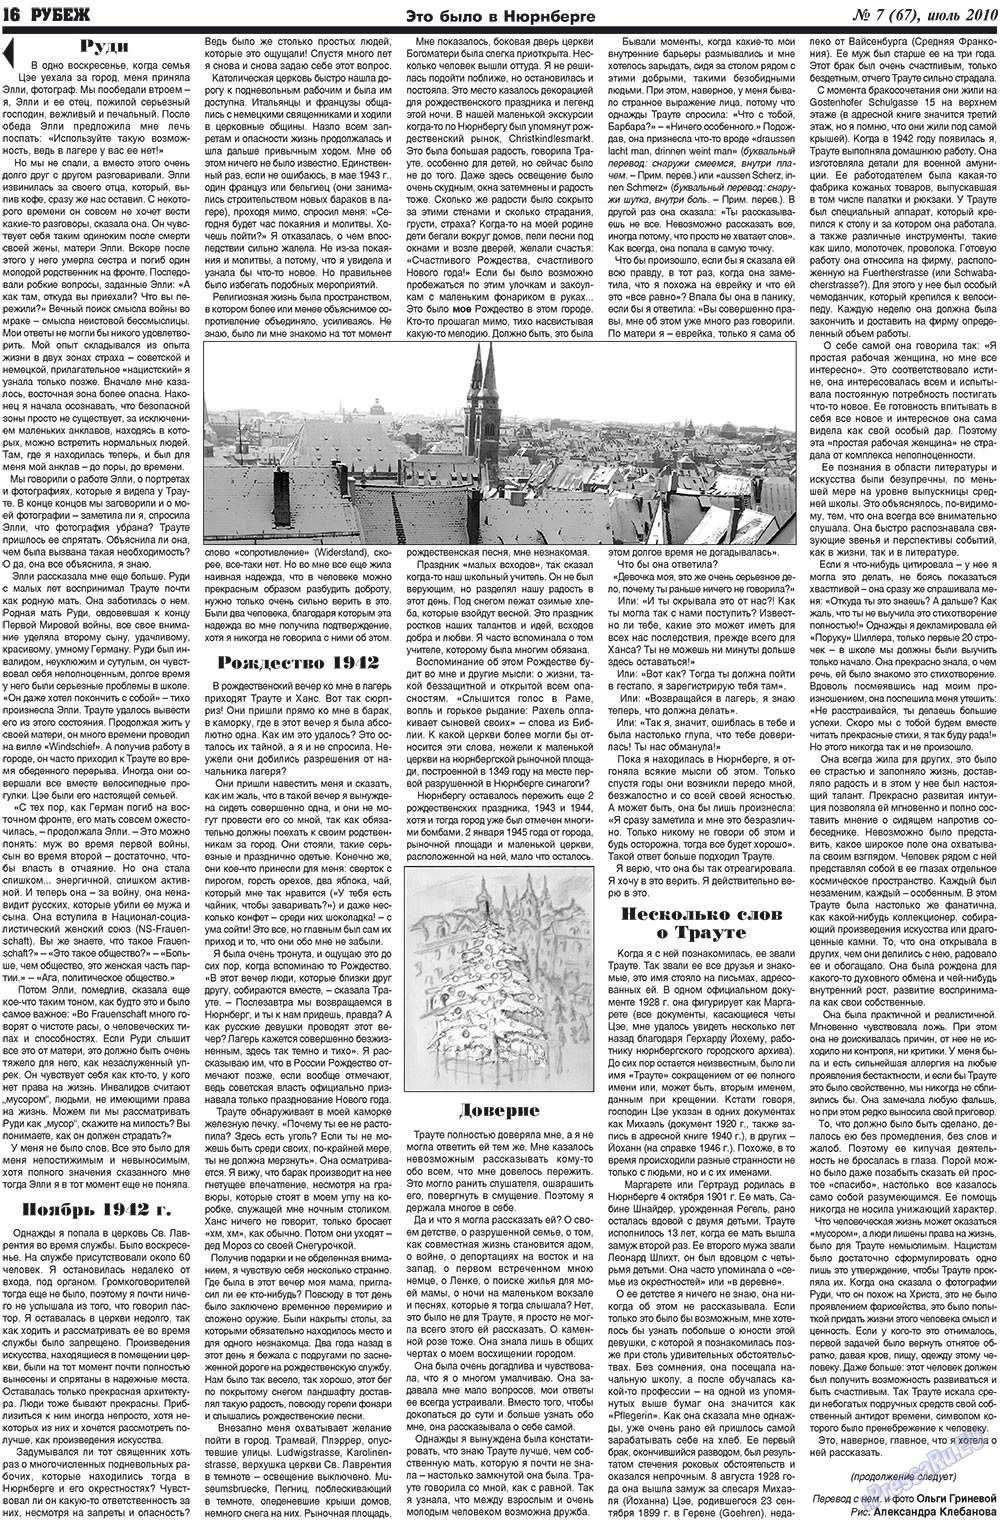 Рубеж (газета). 2010 год, номер 7, стр. 16